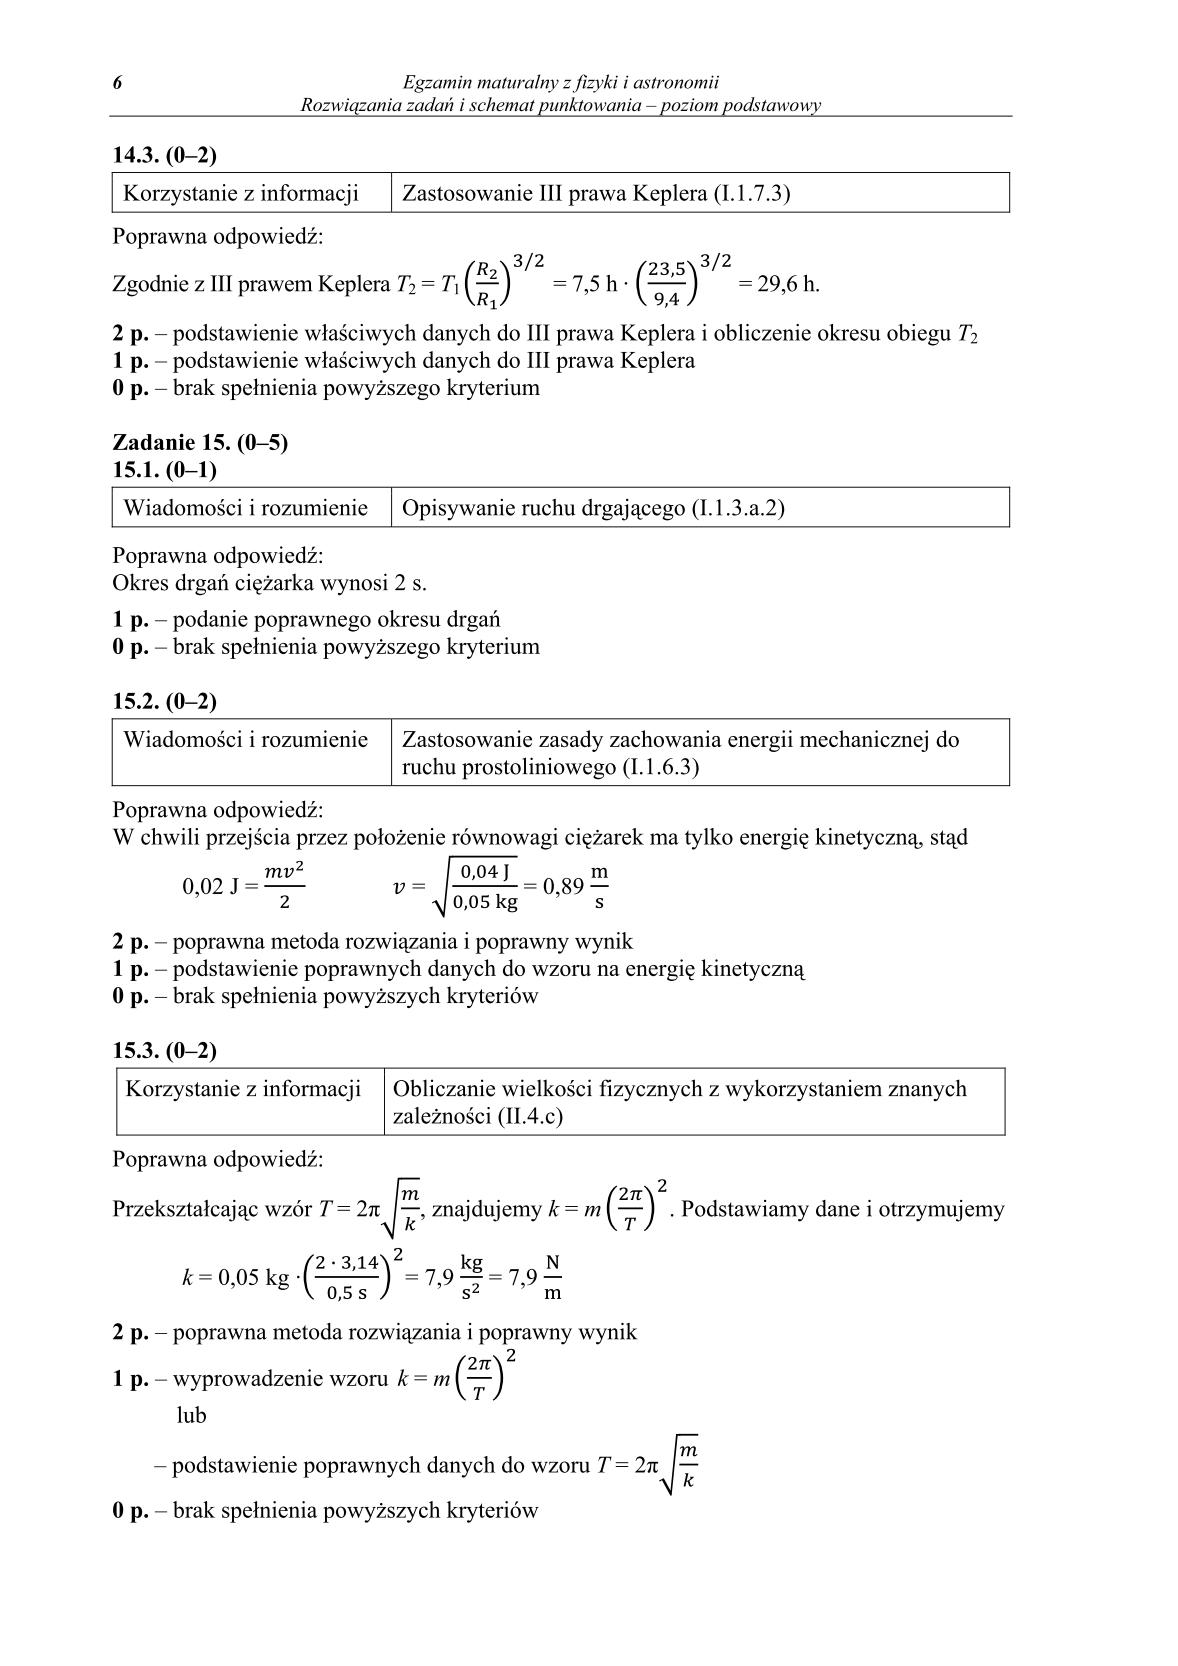 odpowiedzi-fizyka-i-astronomia-poziom-podstawowy-matura-2014-str.6